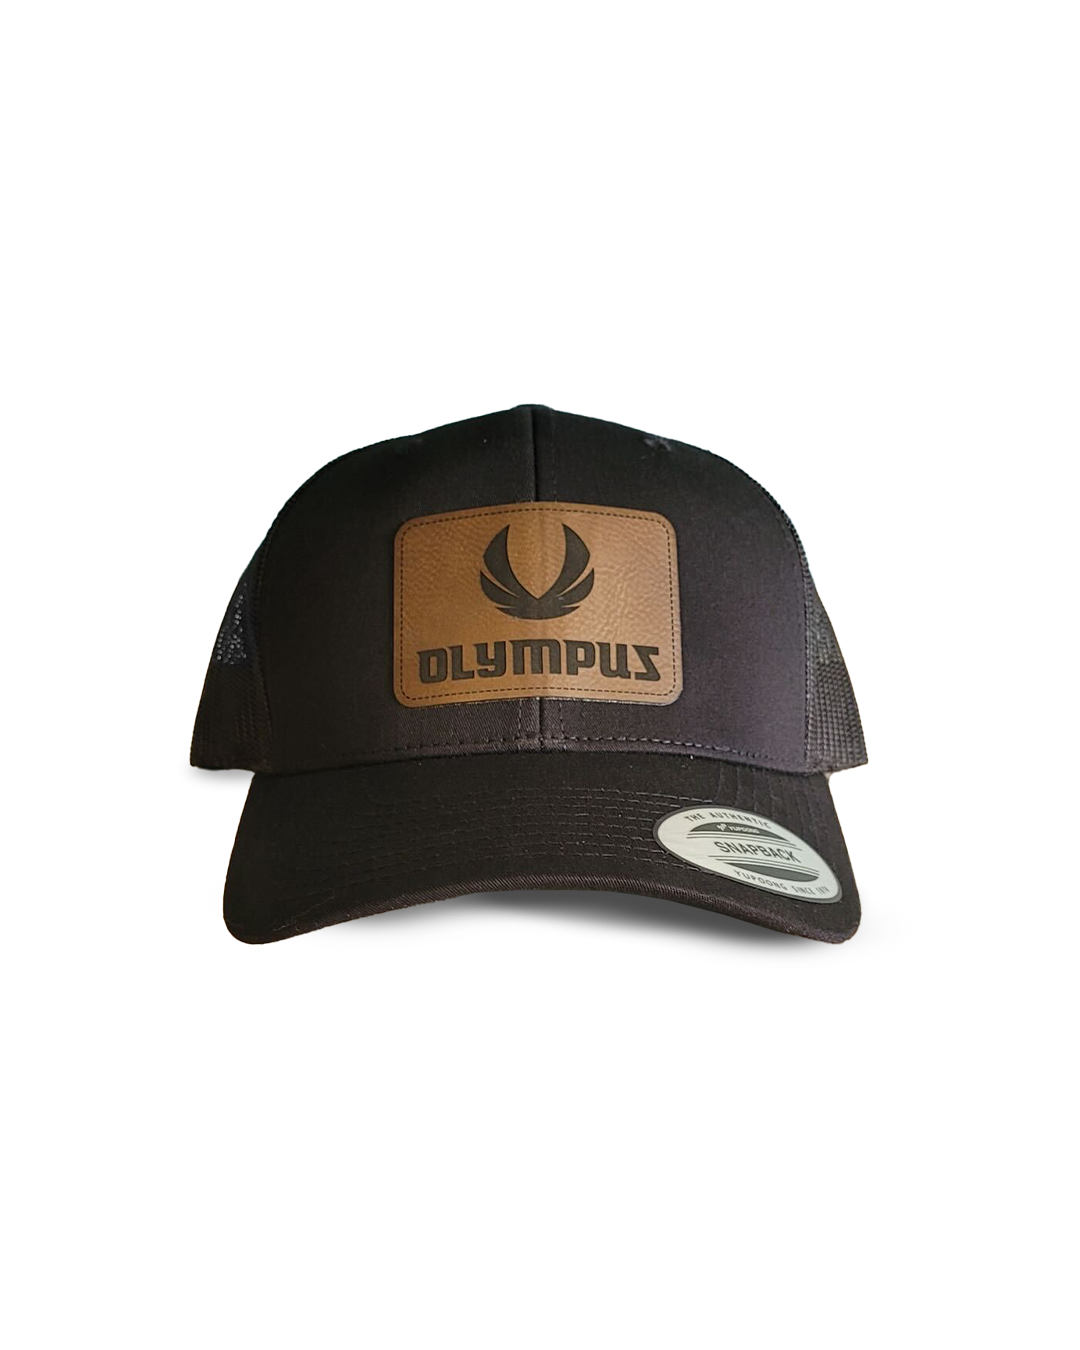 Olympus hat